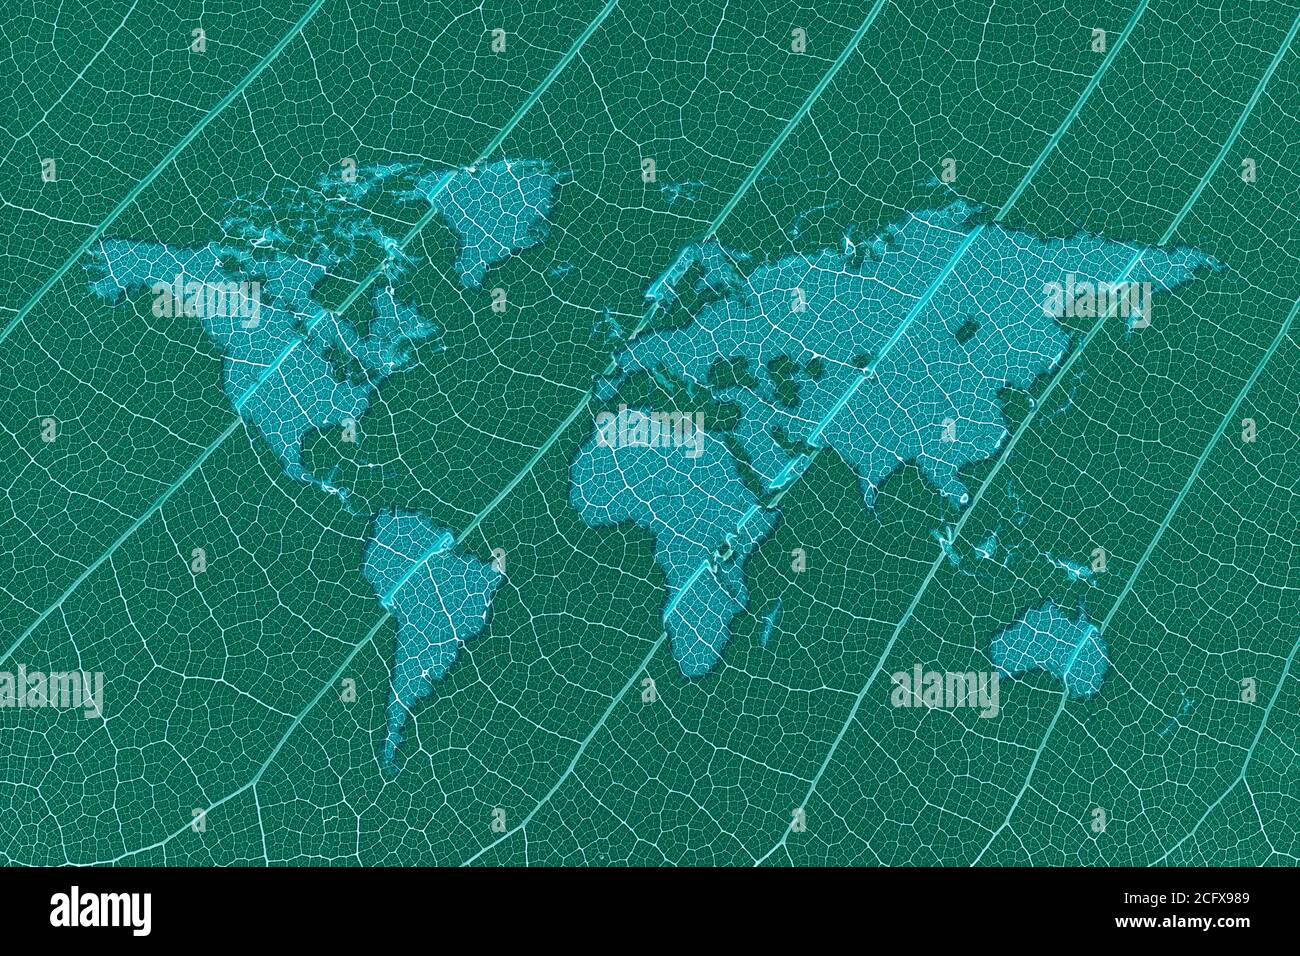 Grüne Ausgaben Wasser-Weltkarte auf einem grünen Blatt-Konzept Stockfoto